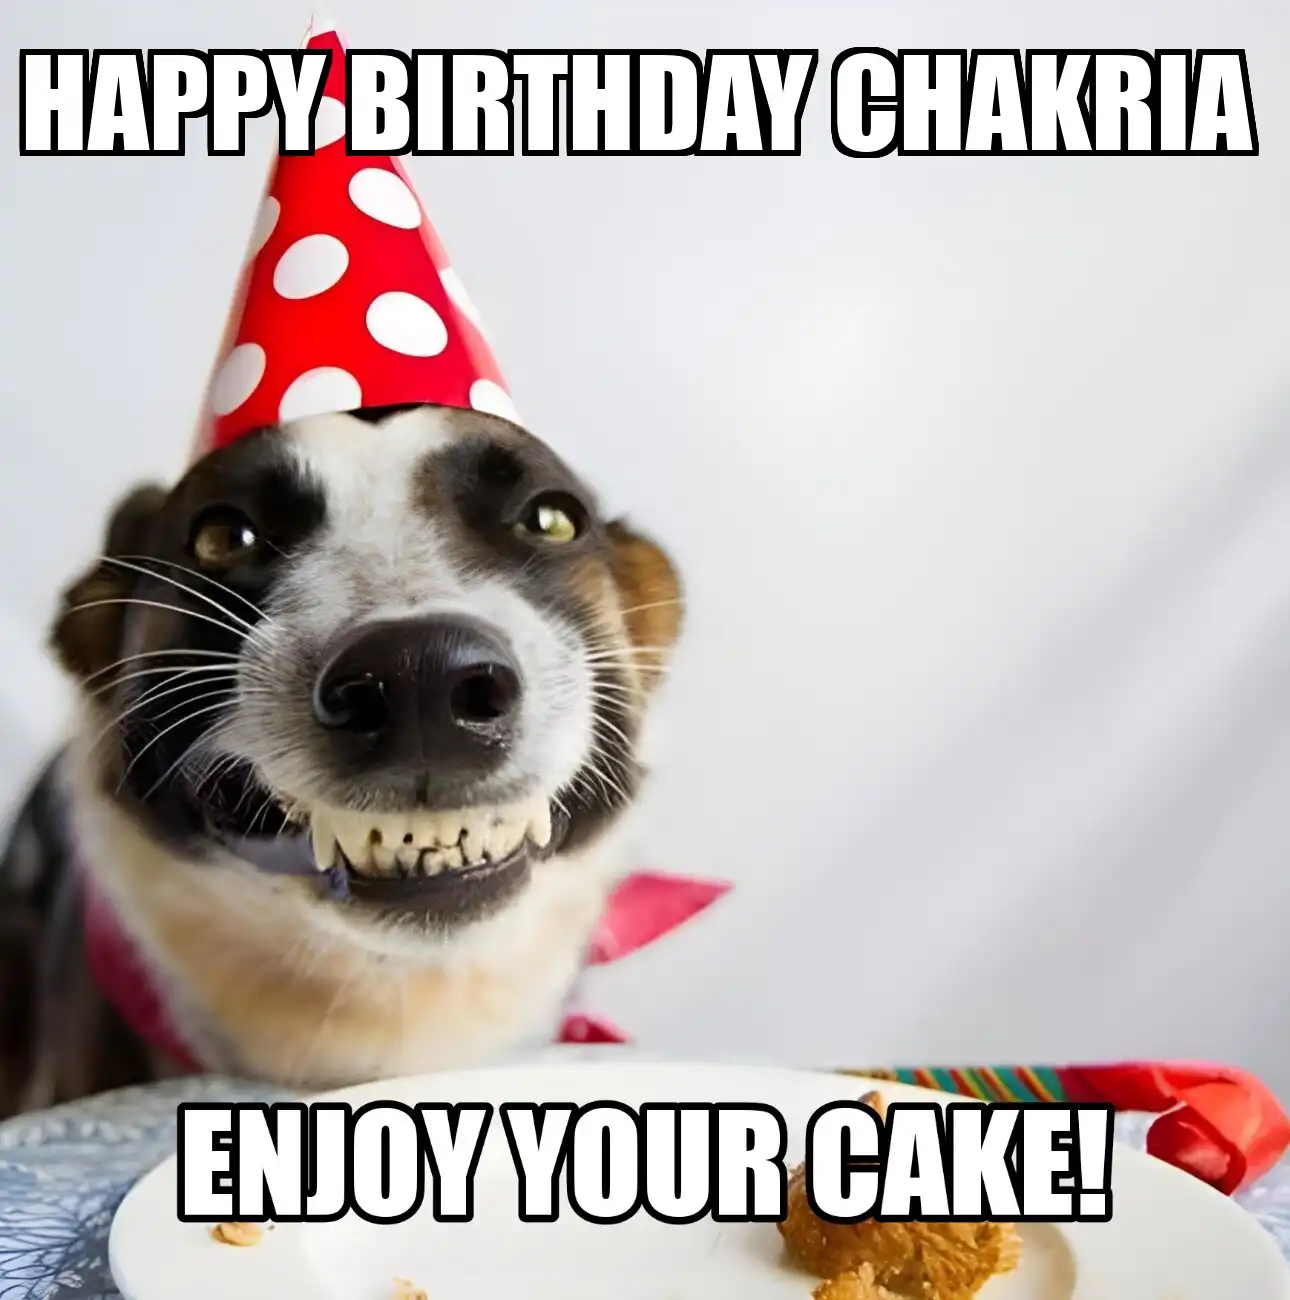 Happy Birthday Chakria Enjoy Your Cake Dog Meme